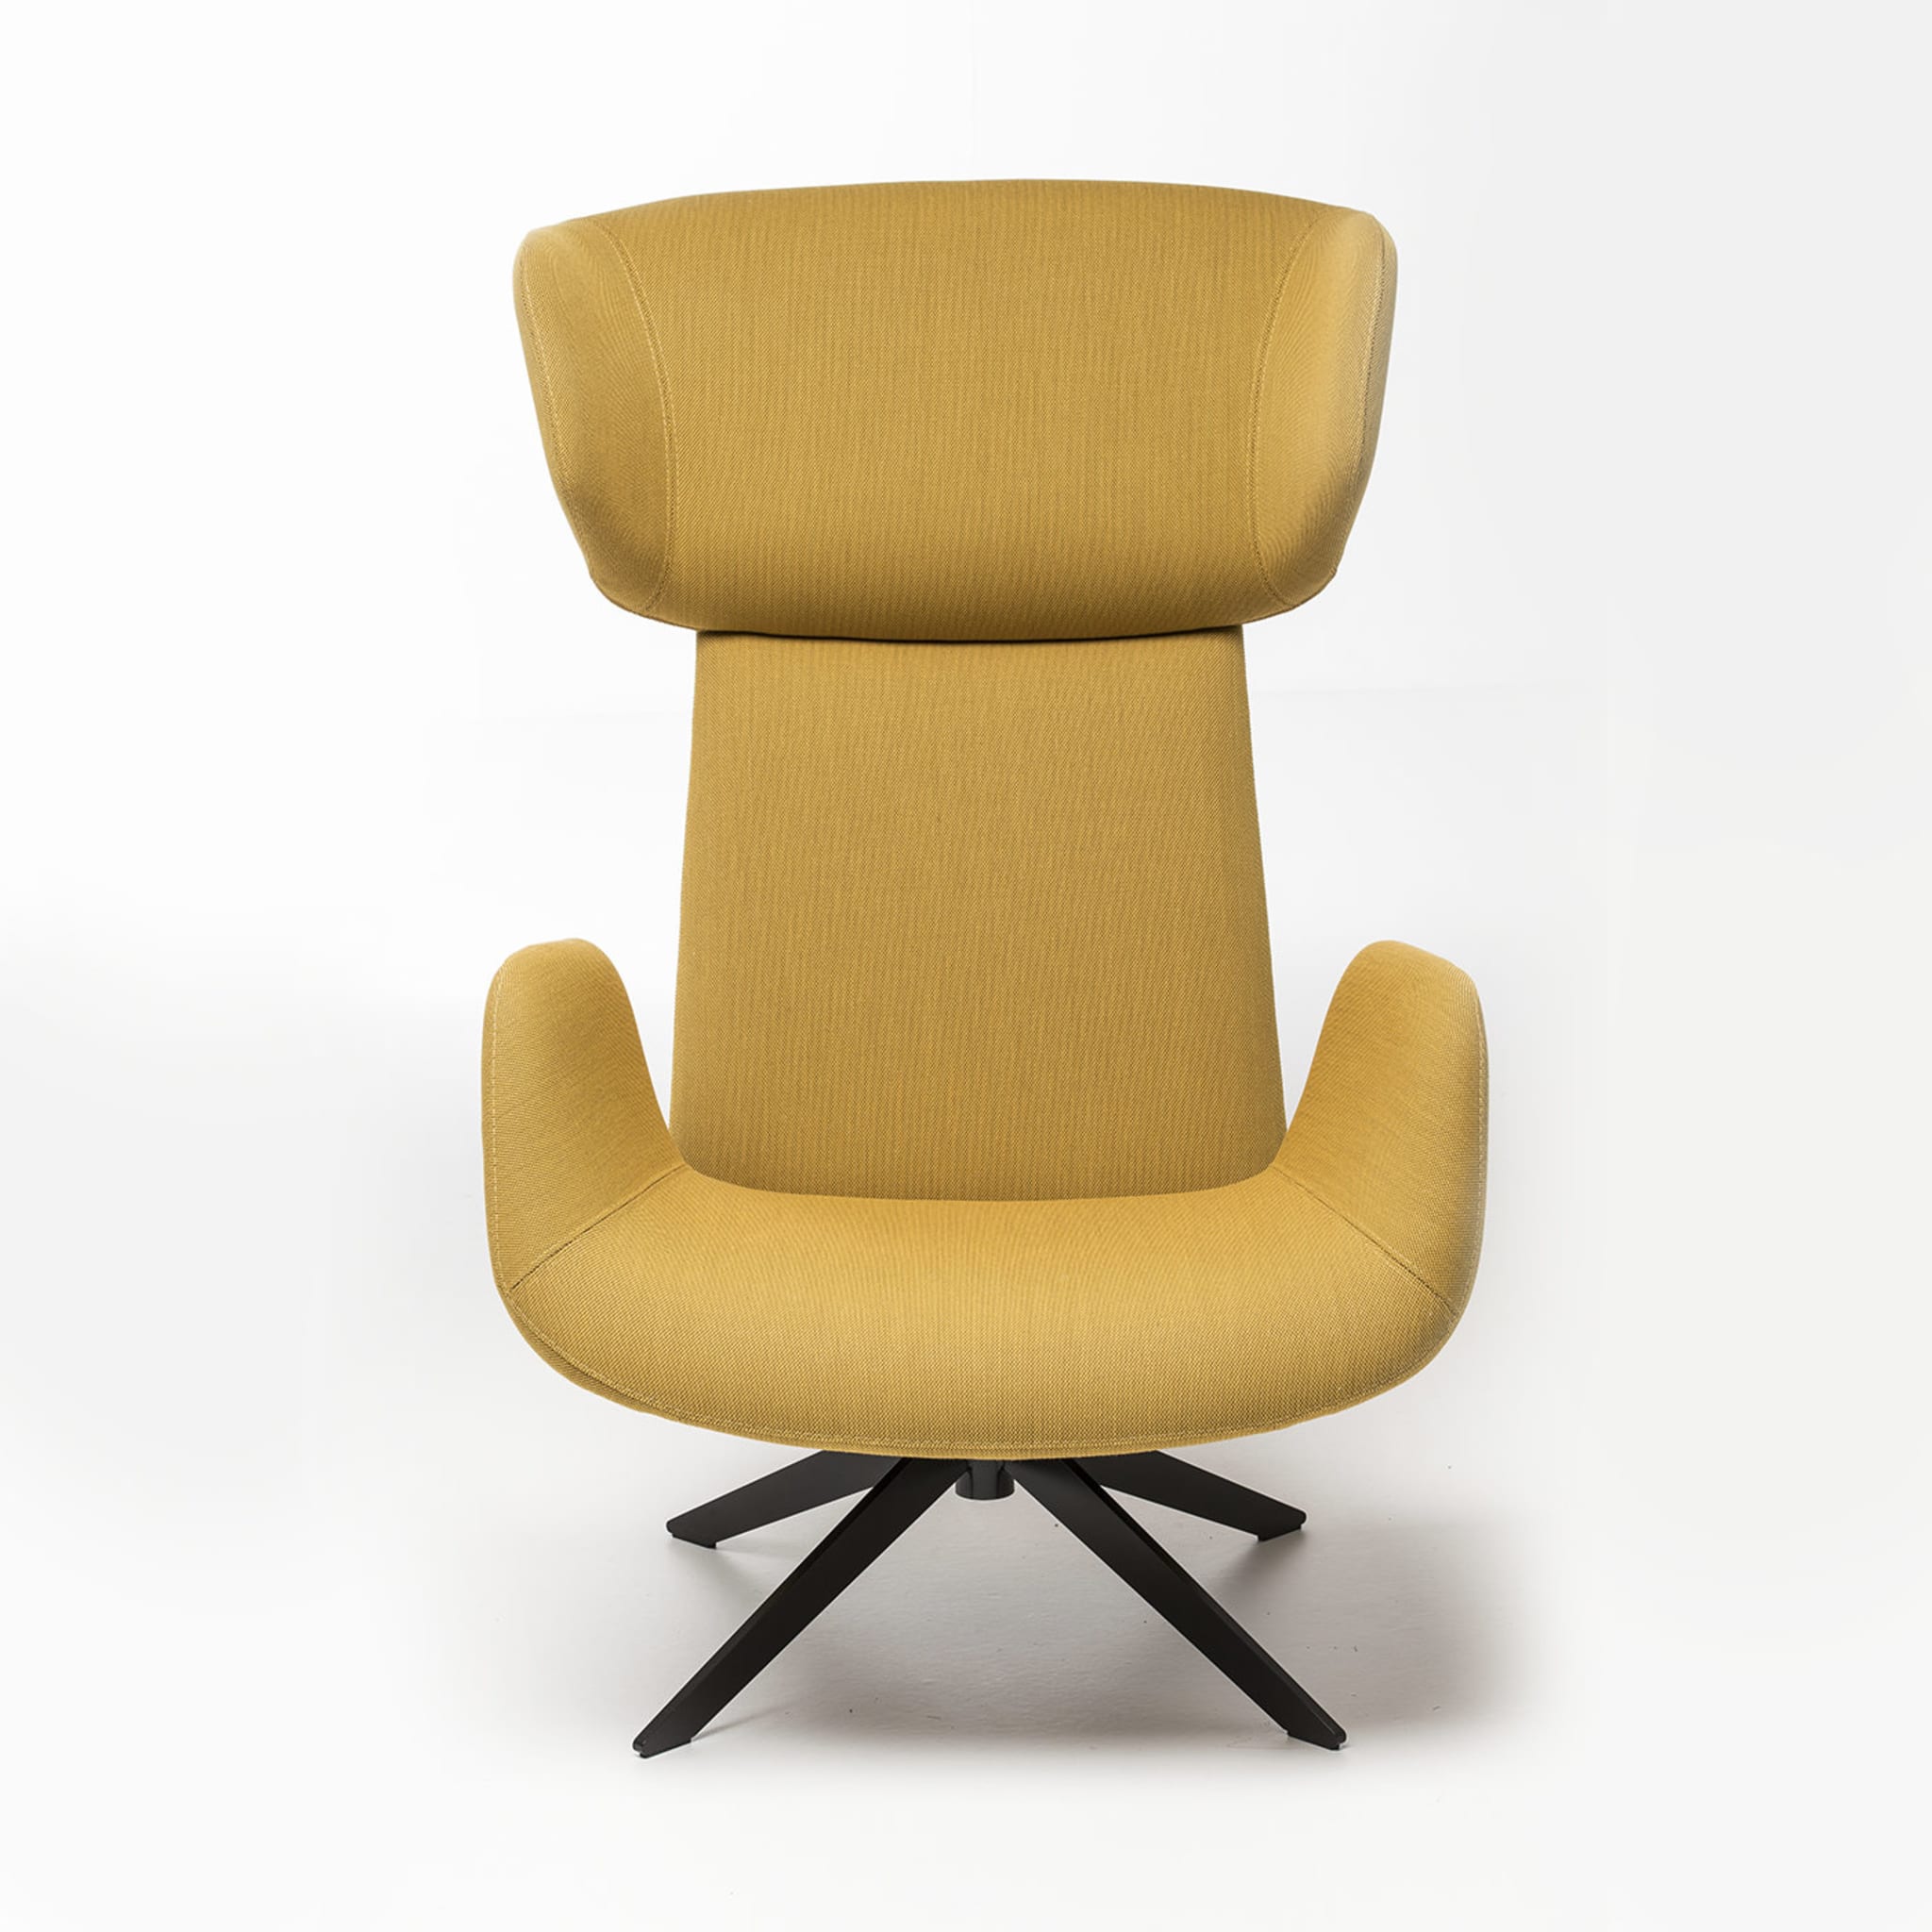 Myplace Sessel mit umhüllender kopfstütze by Michael Geldmacher - Alternative Ansicht 1